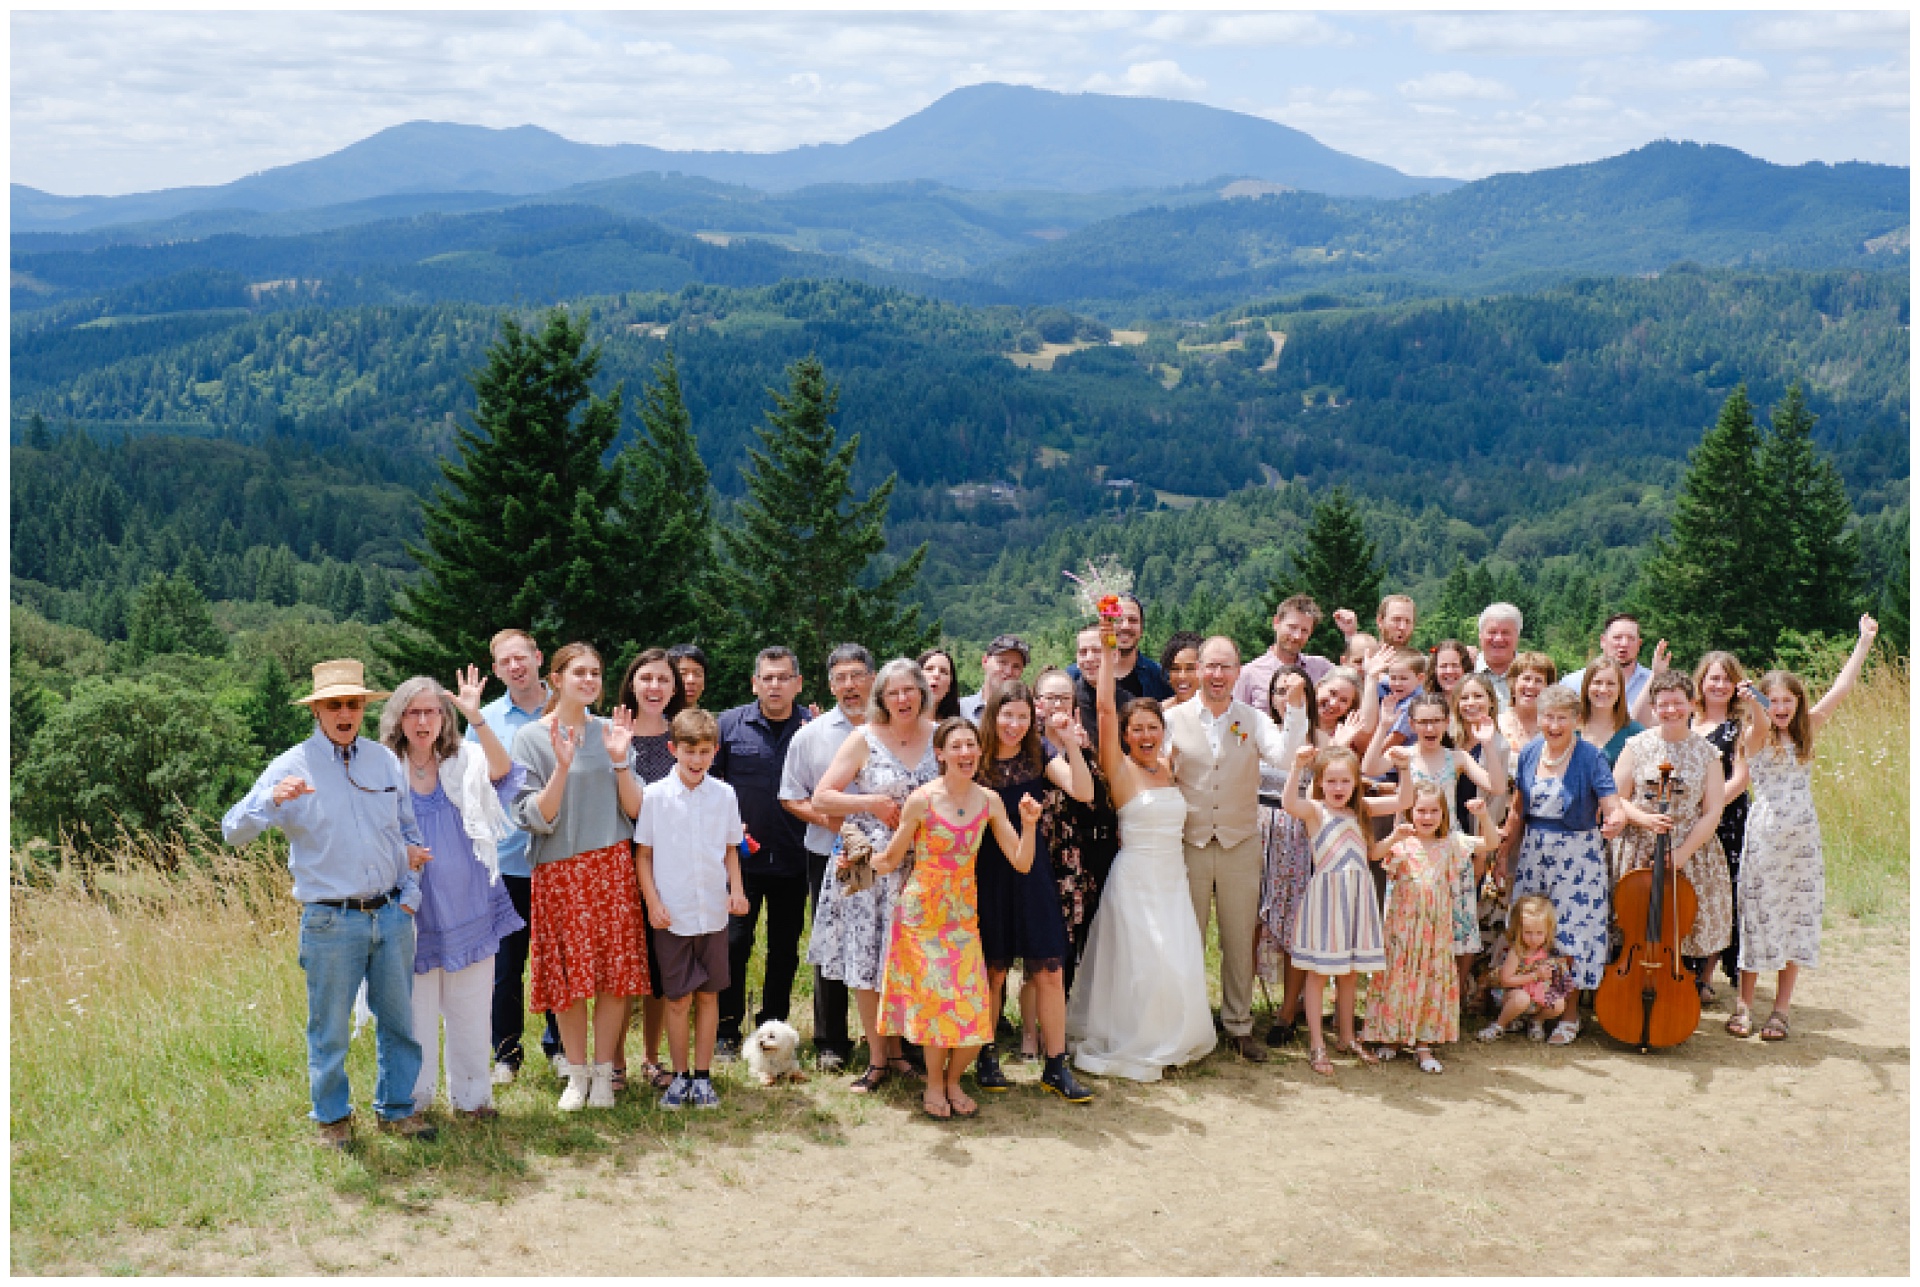 Wedding guests celebrating at mountain wedding in Corvallis Oregon